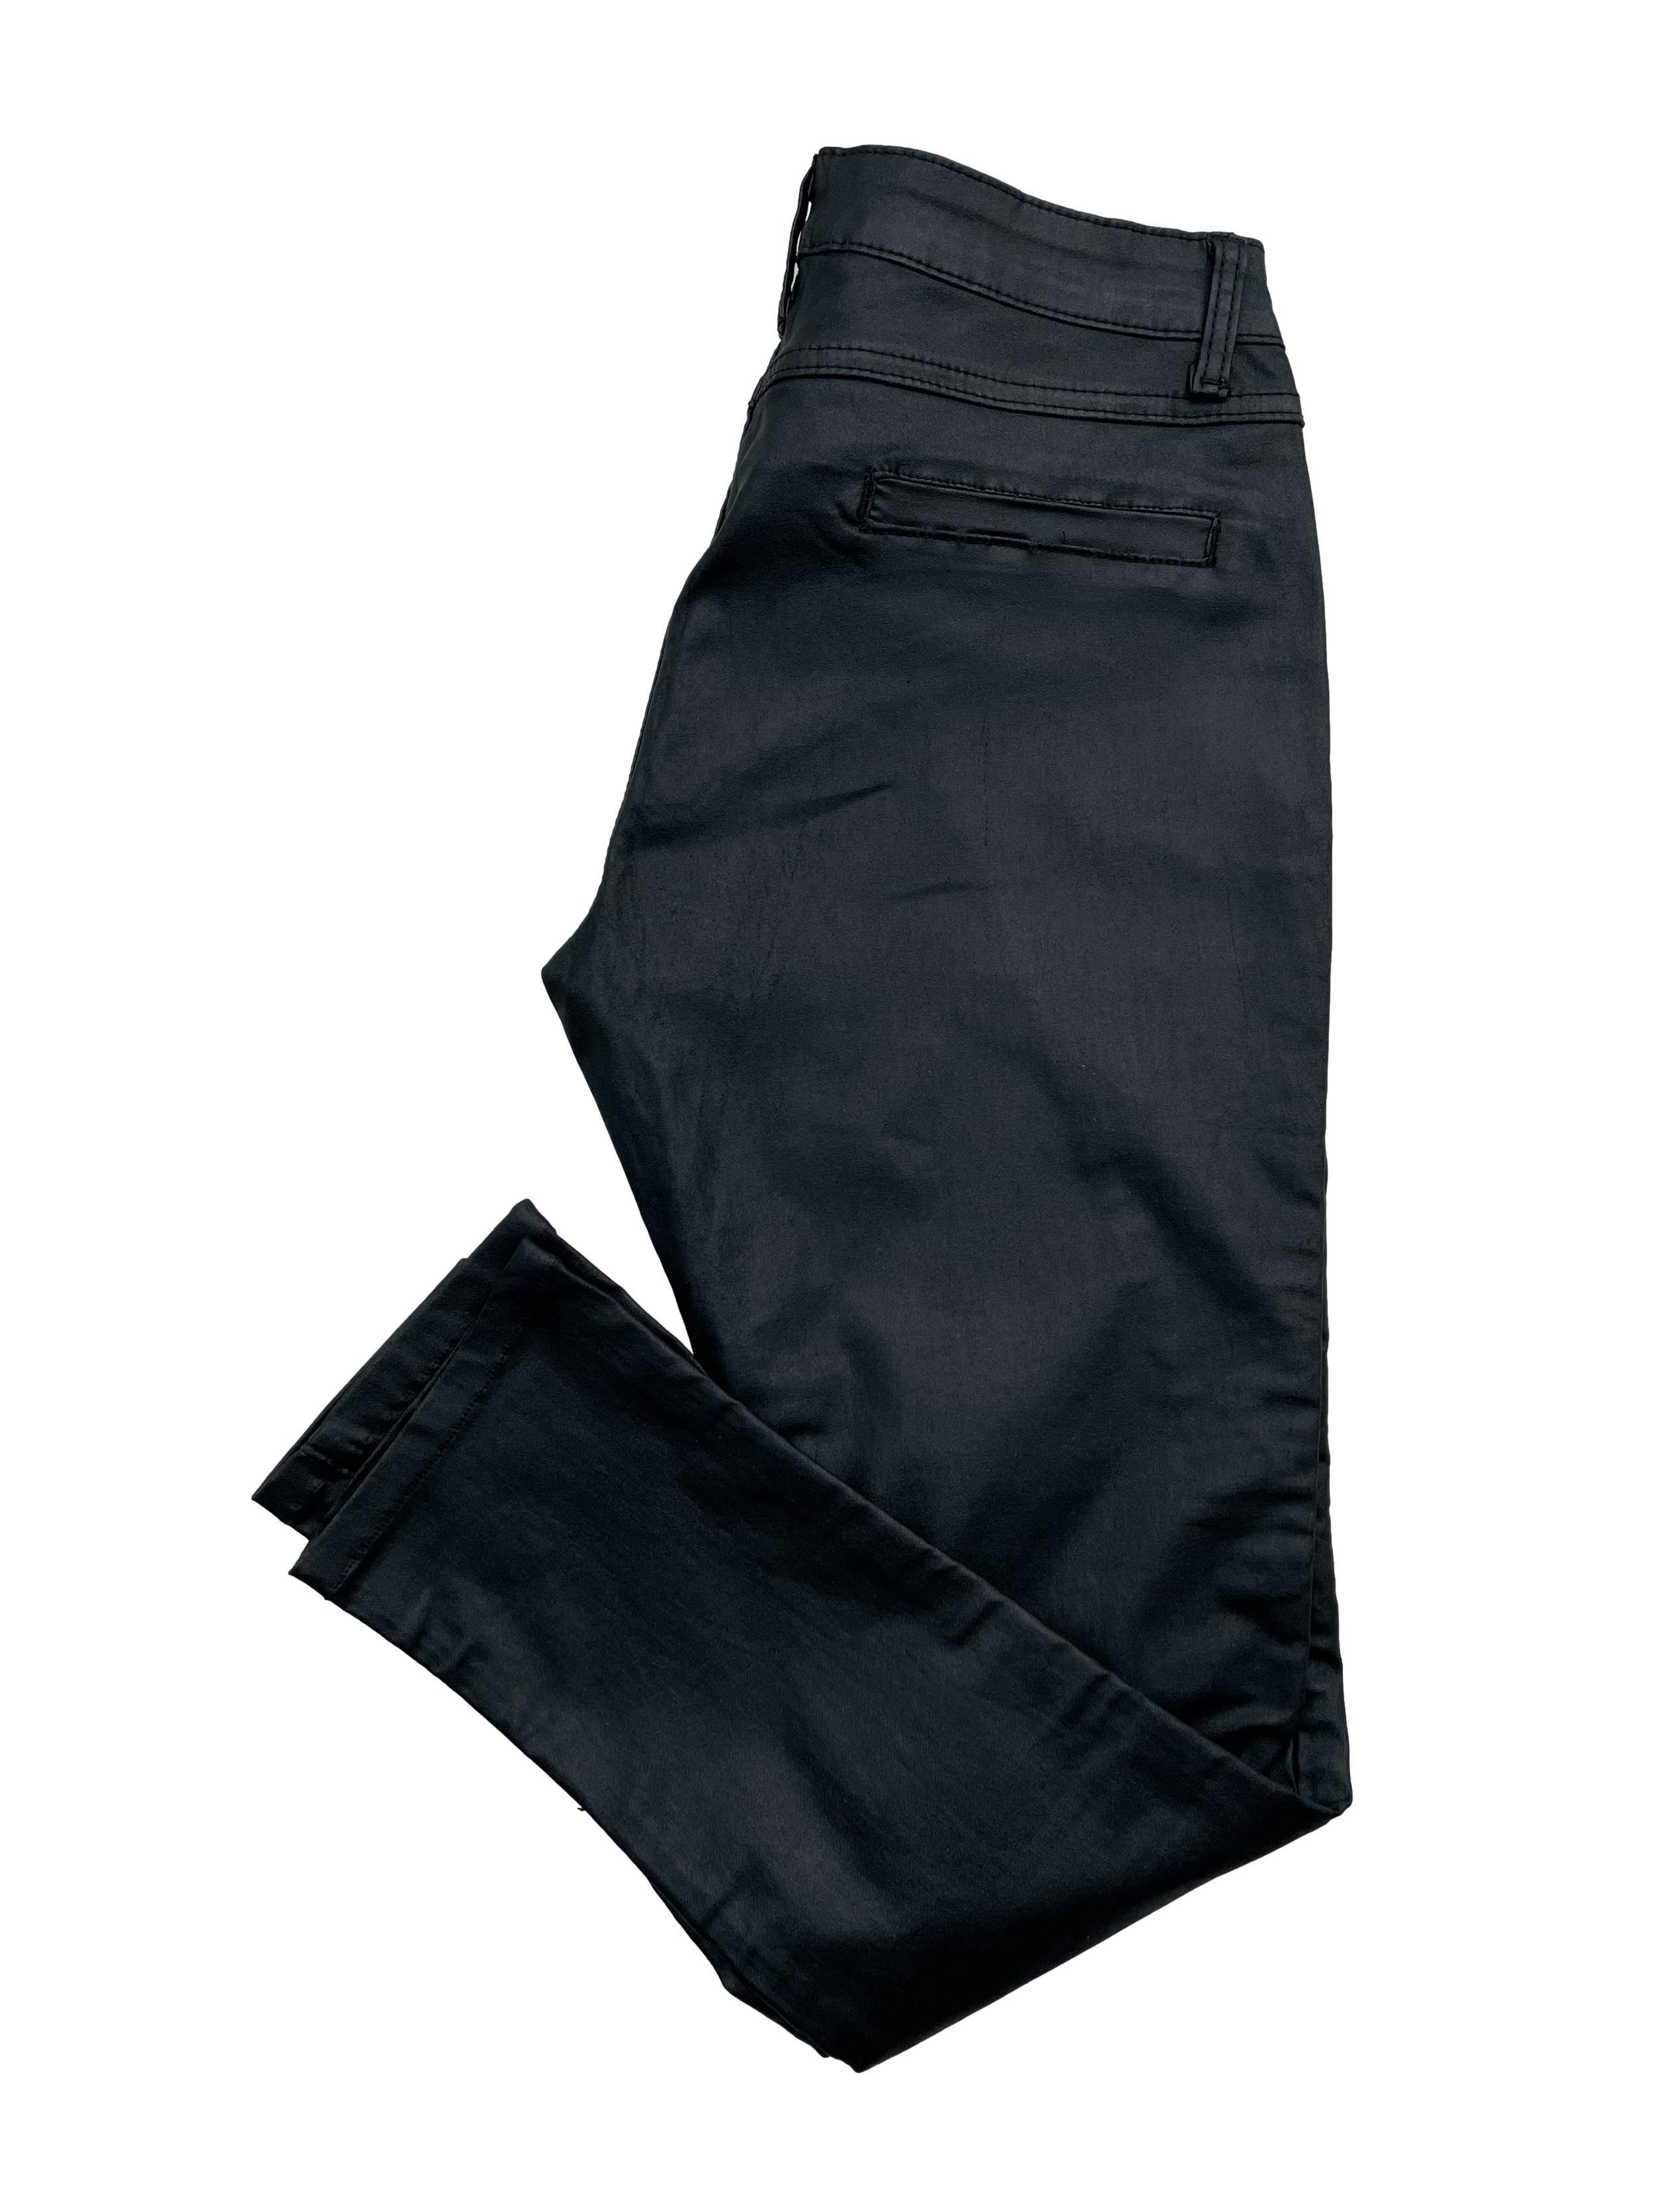 Pantalón negro pitillo, tela stretch efecto encerado, con cierres y falsos bolsillos. Tiro 22cm, Cintura 80cm, Largo 88cm.Talla S en etiqueta.